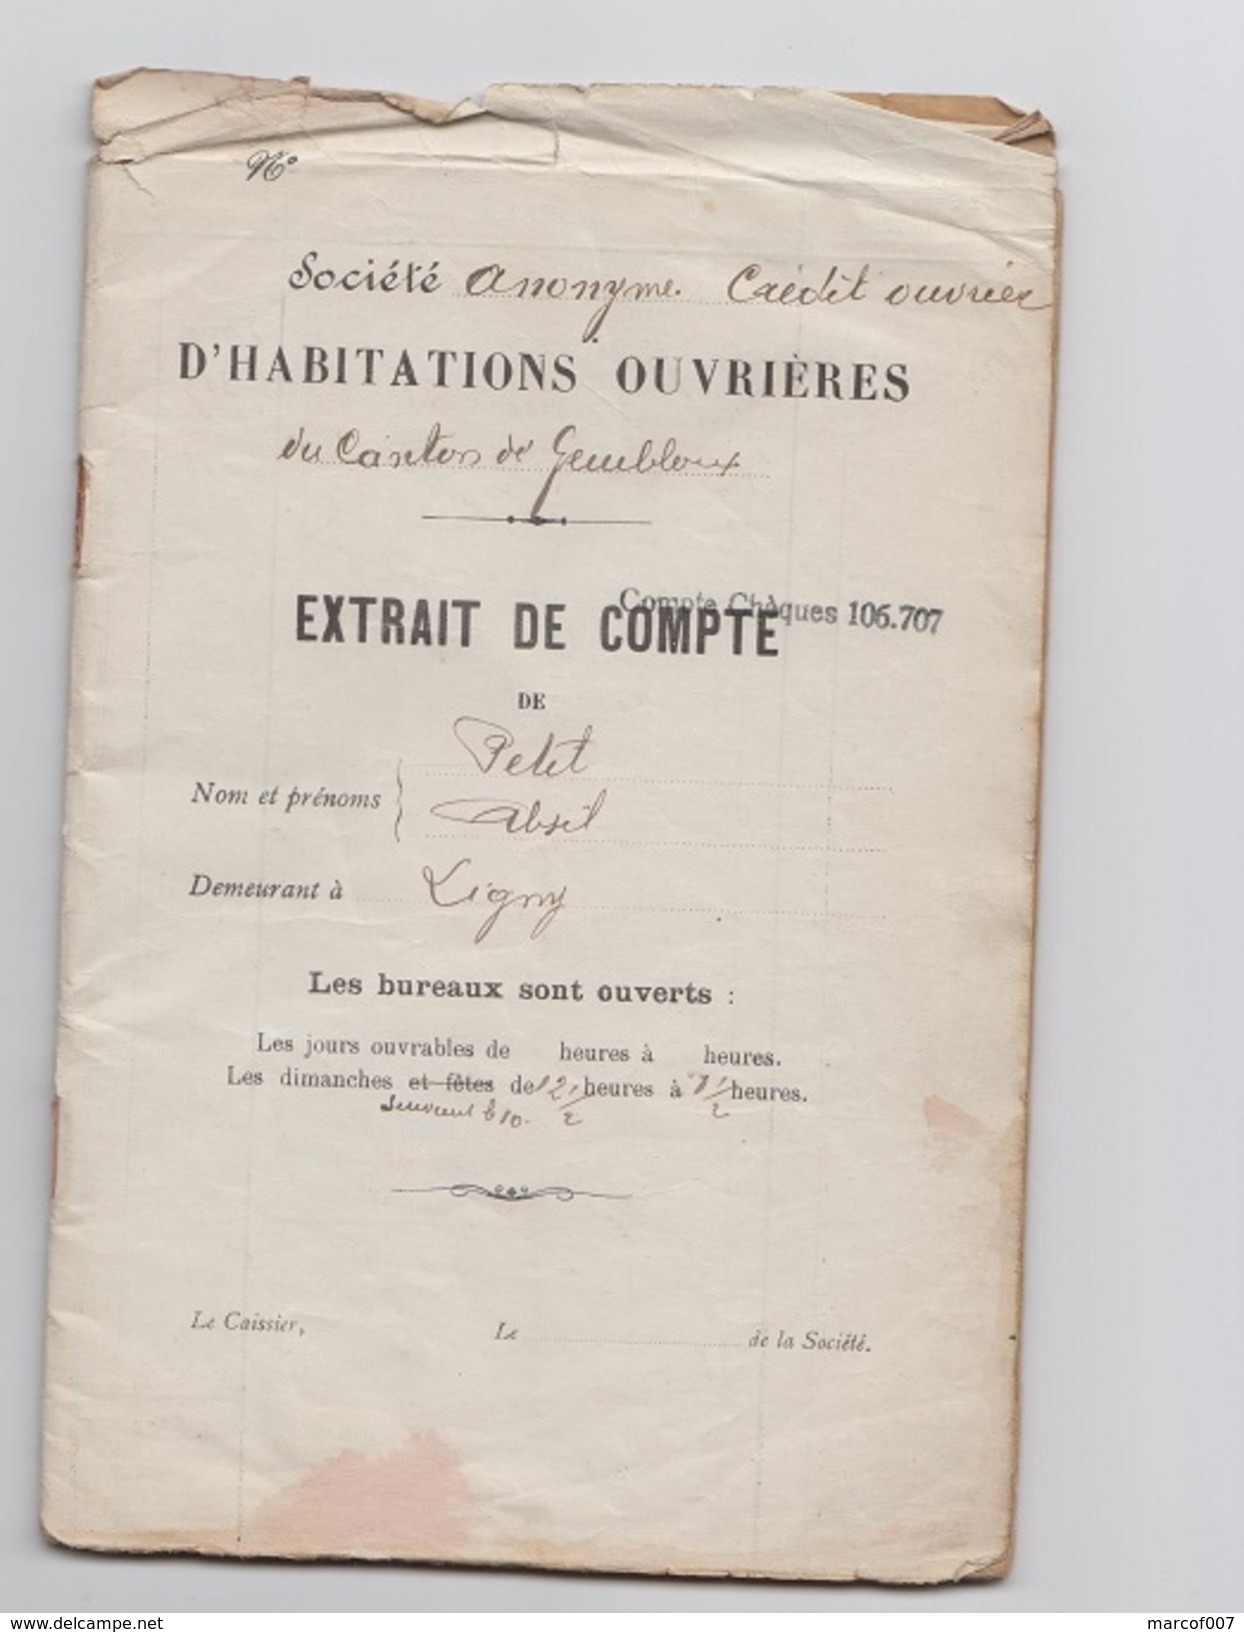 1923 - Societe Anonyme Credit Ouvrier - Extrait De Compte - Mr PETIT - LIGNY - Banca & Assicurazione